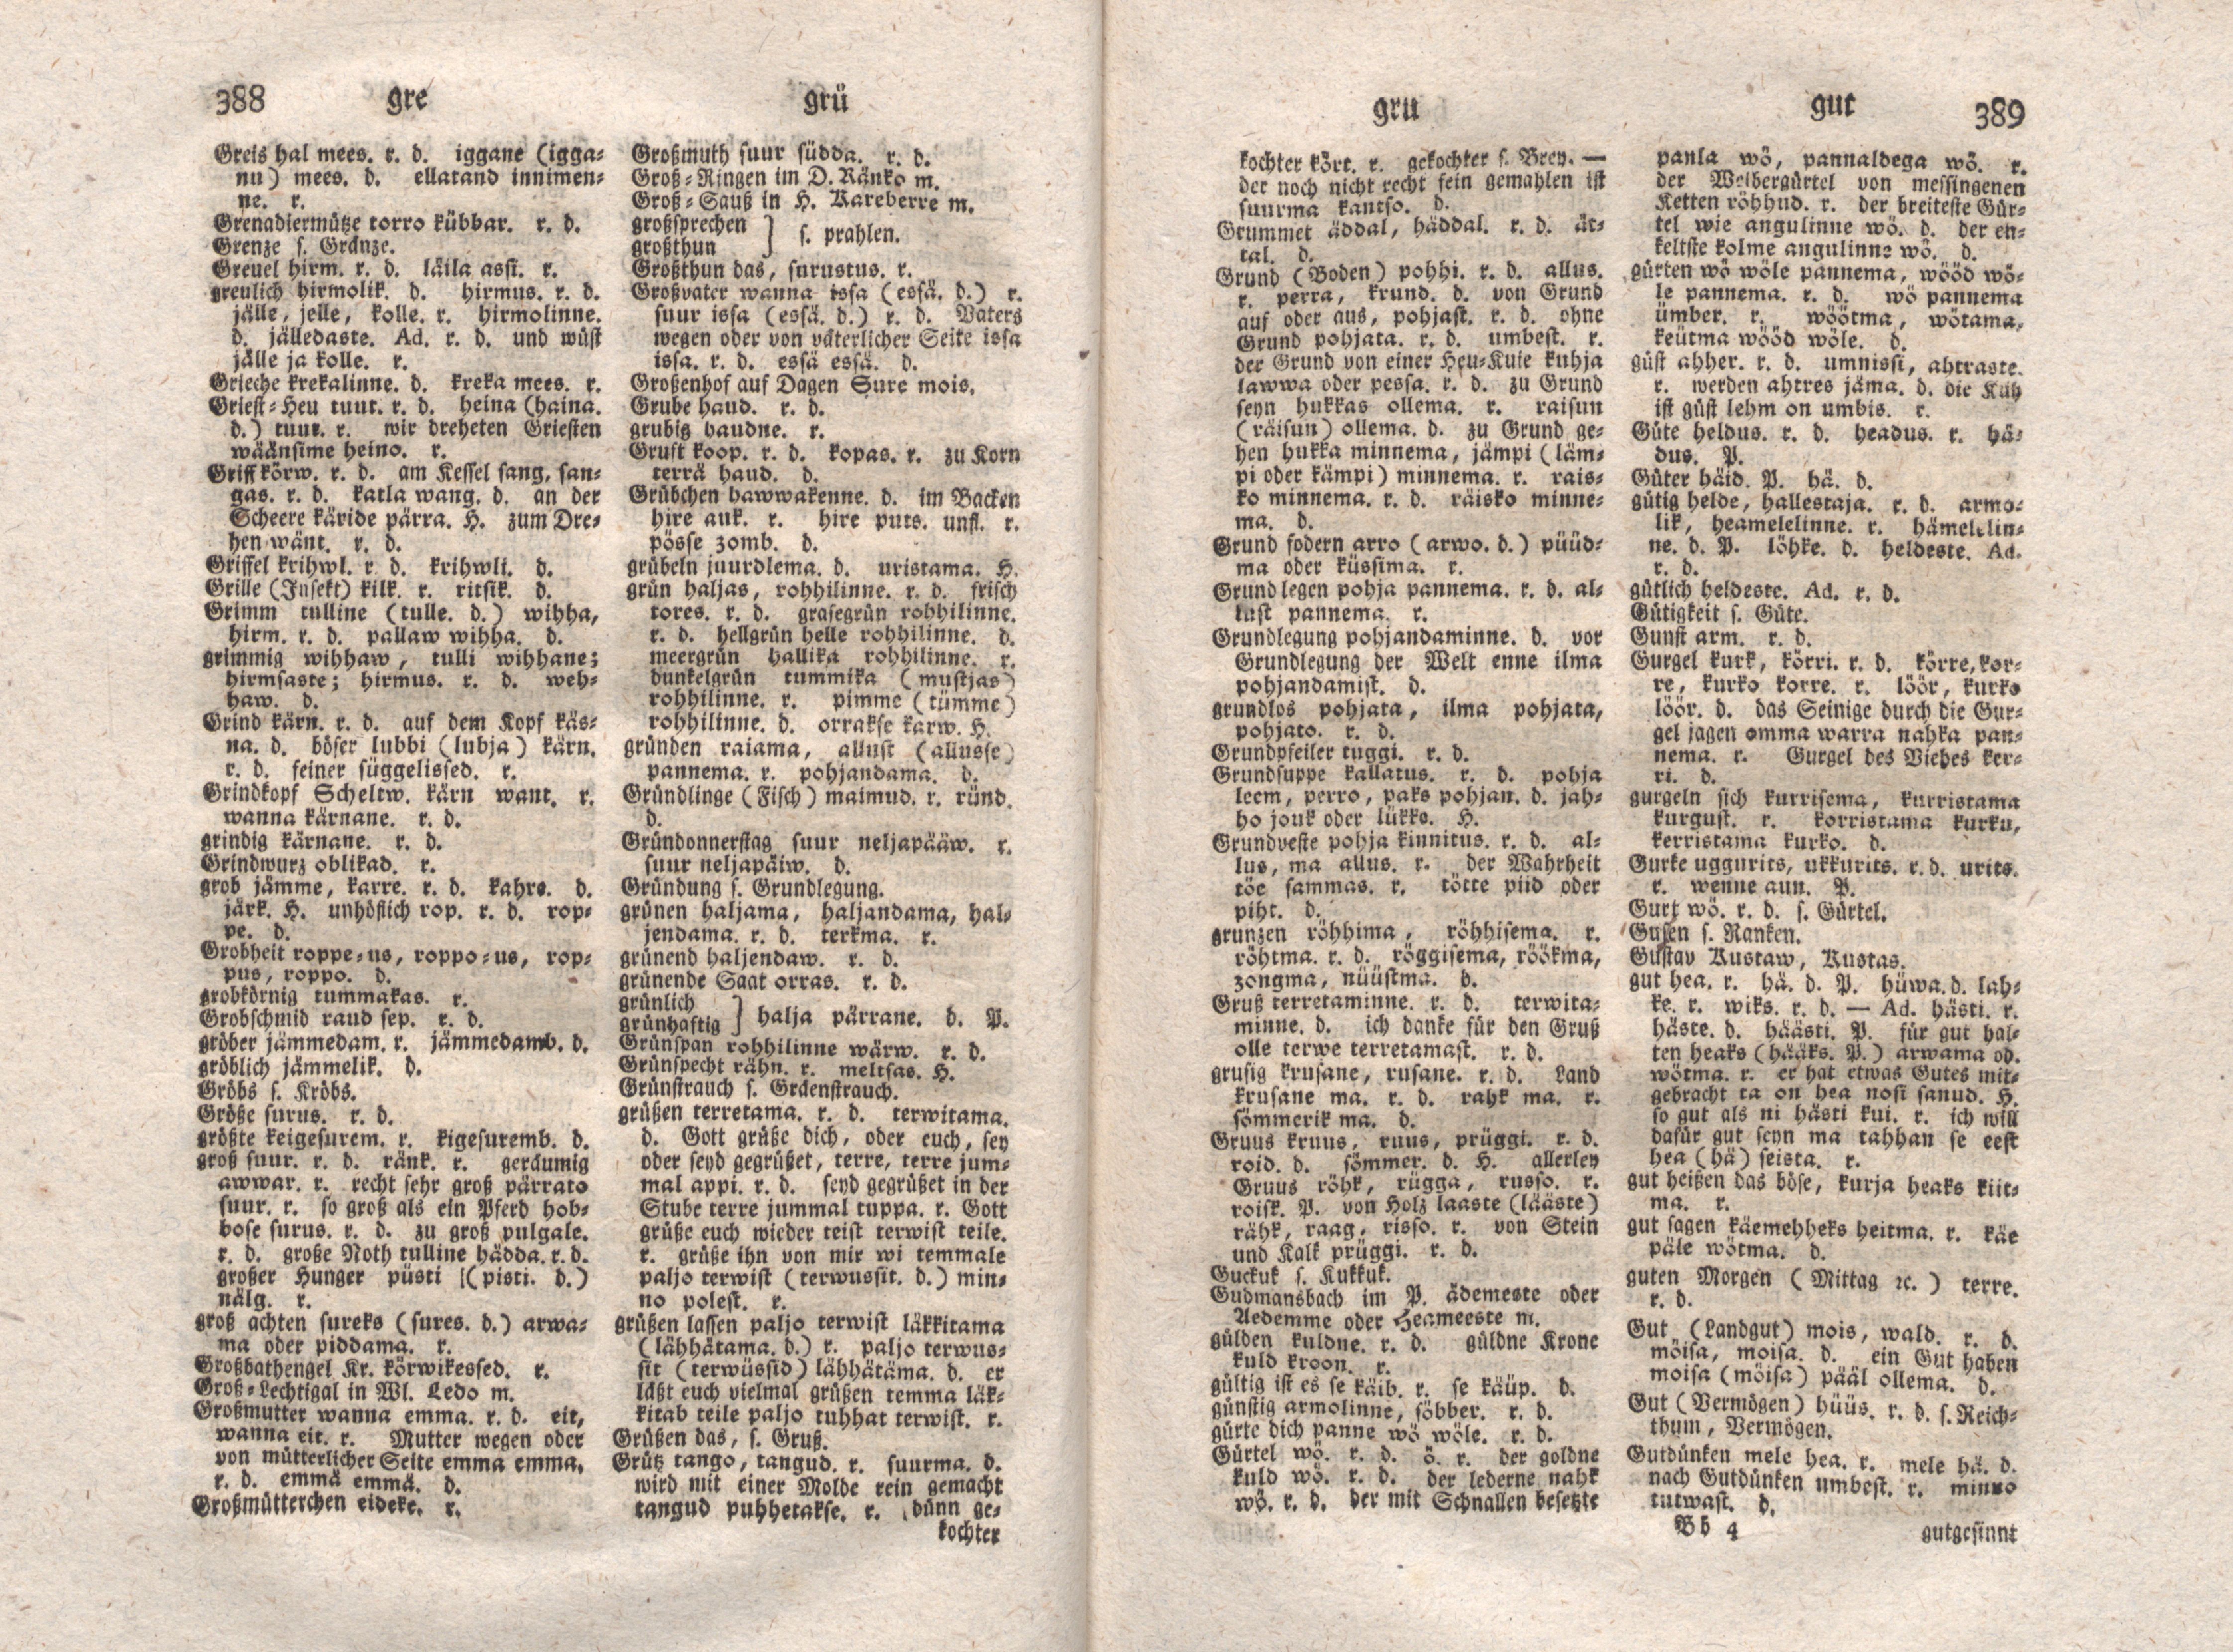 Ehstnische Sprachlehre für beide Hauptdialekte (1780) | 205. (388-389) Main body of text